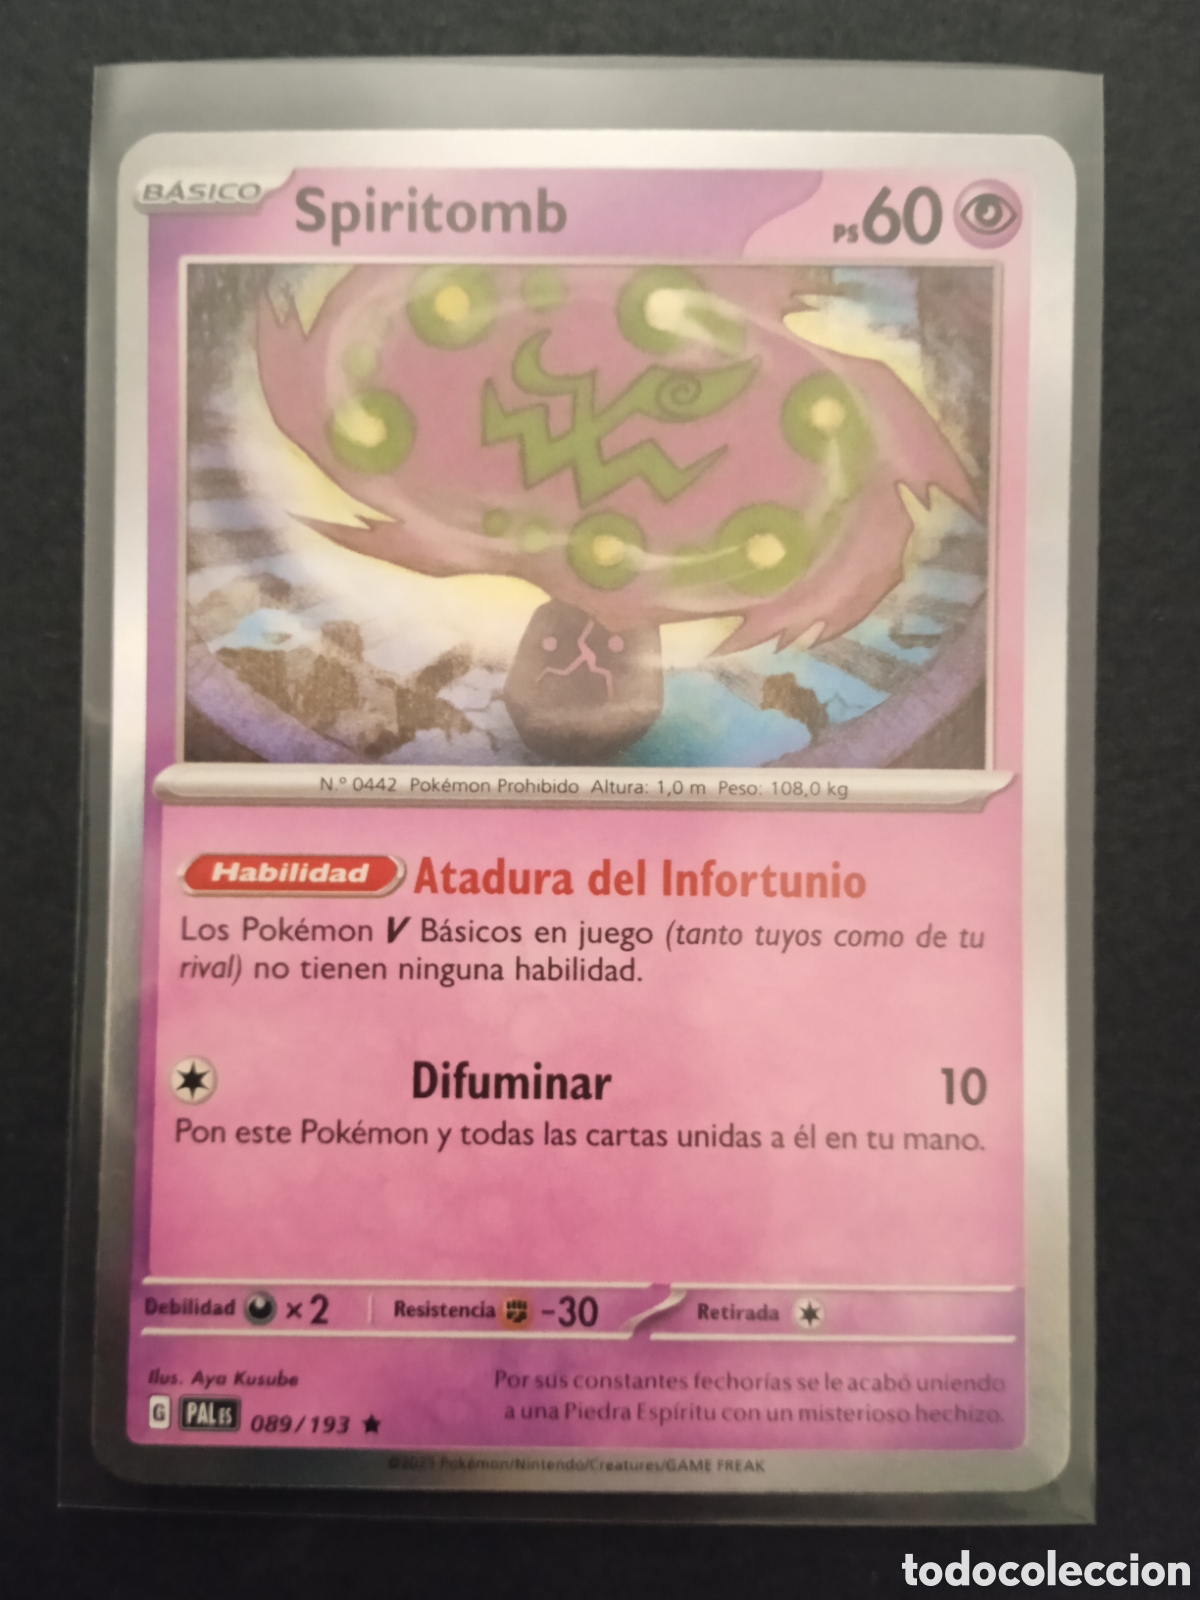 089 / 193 spiritomb holo pokemon card tcg escar - Comprar Cartas  Colecionáveis antigas no todocoleccion